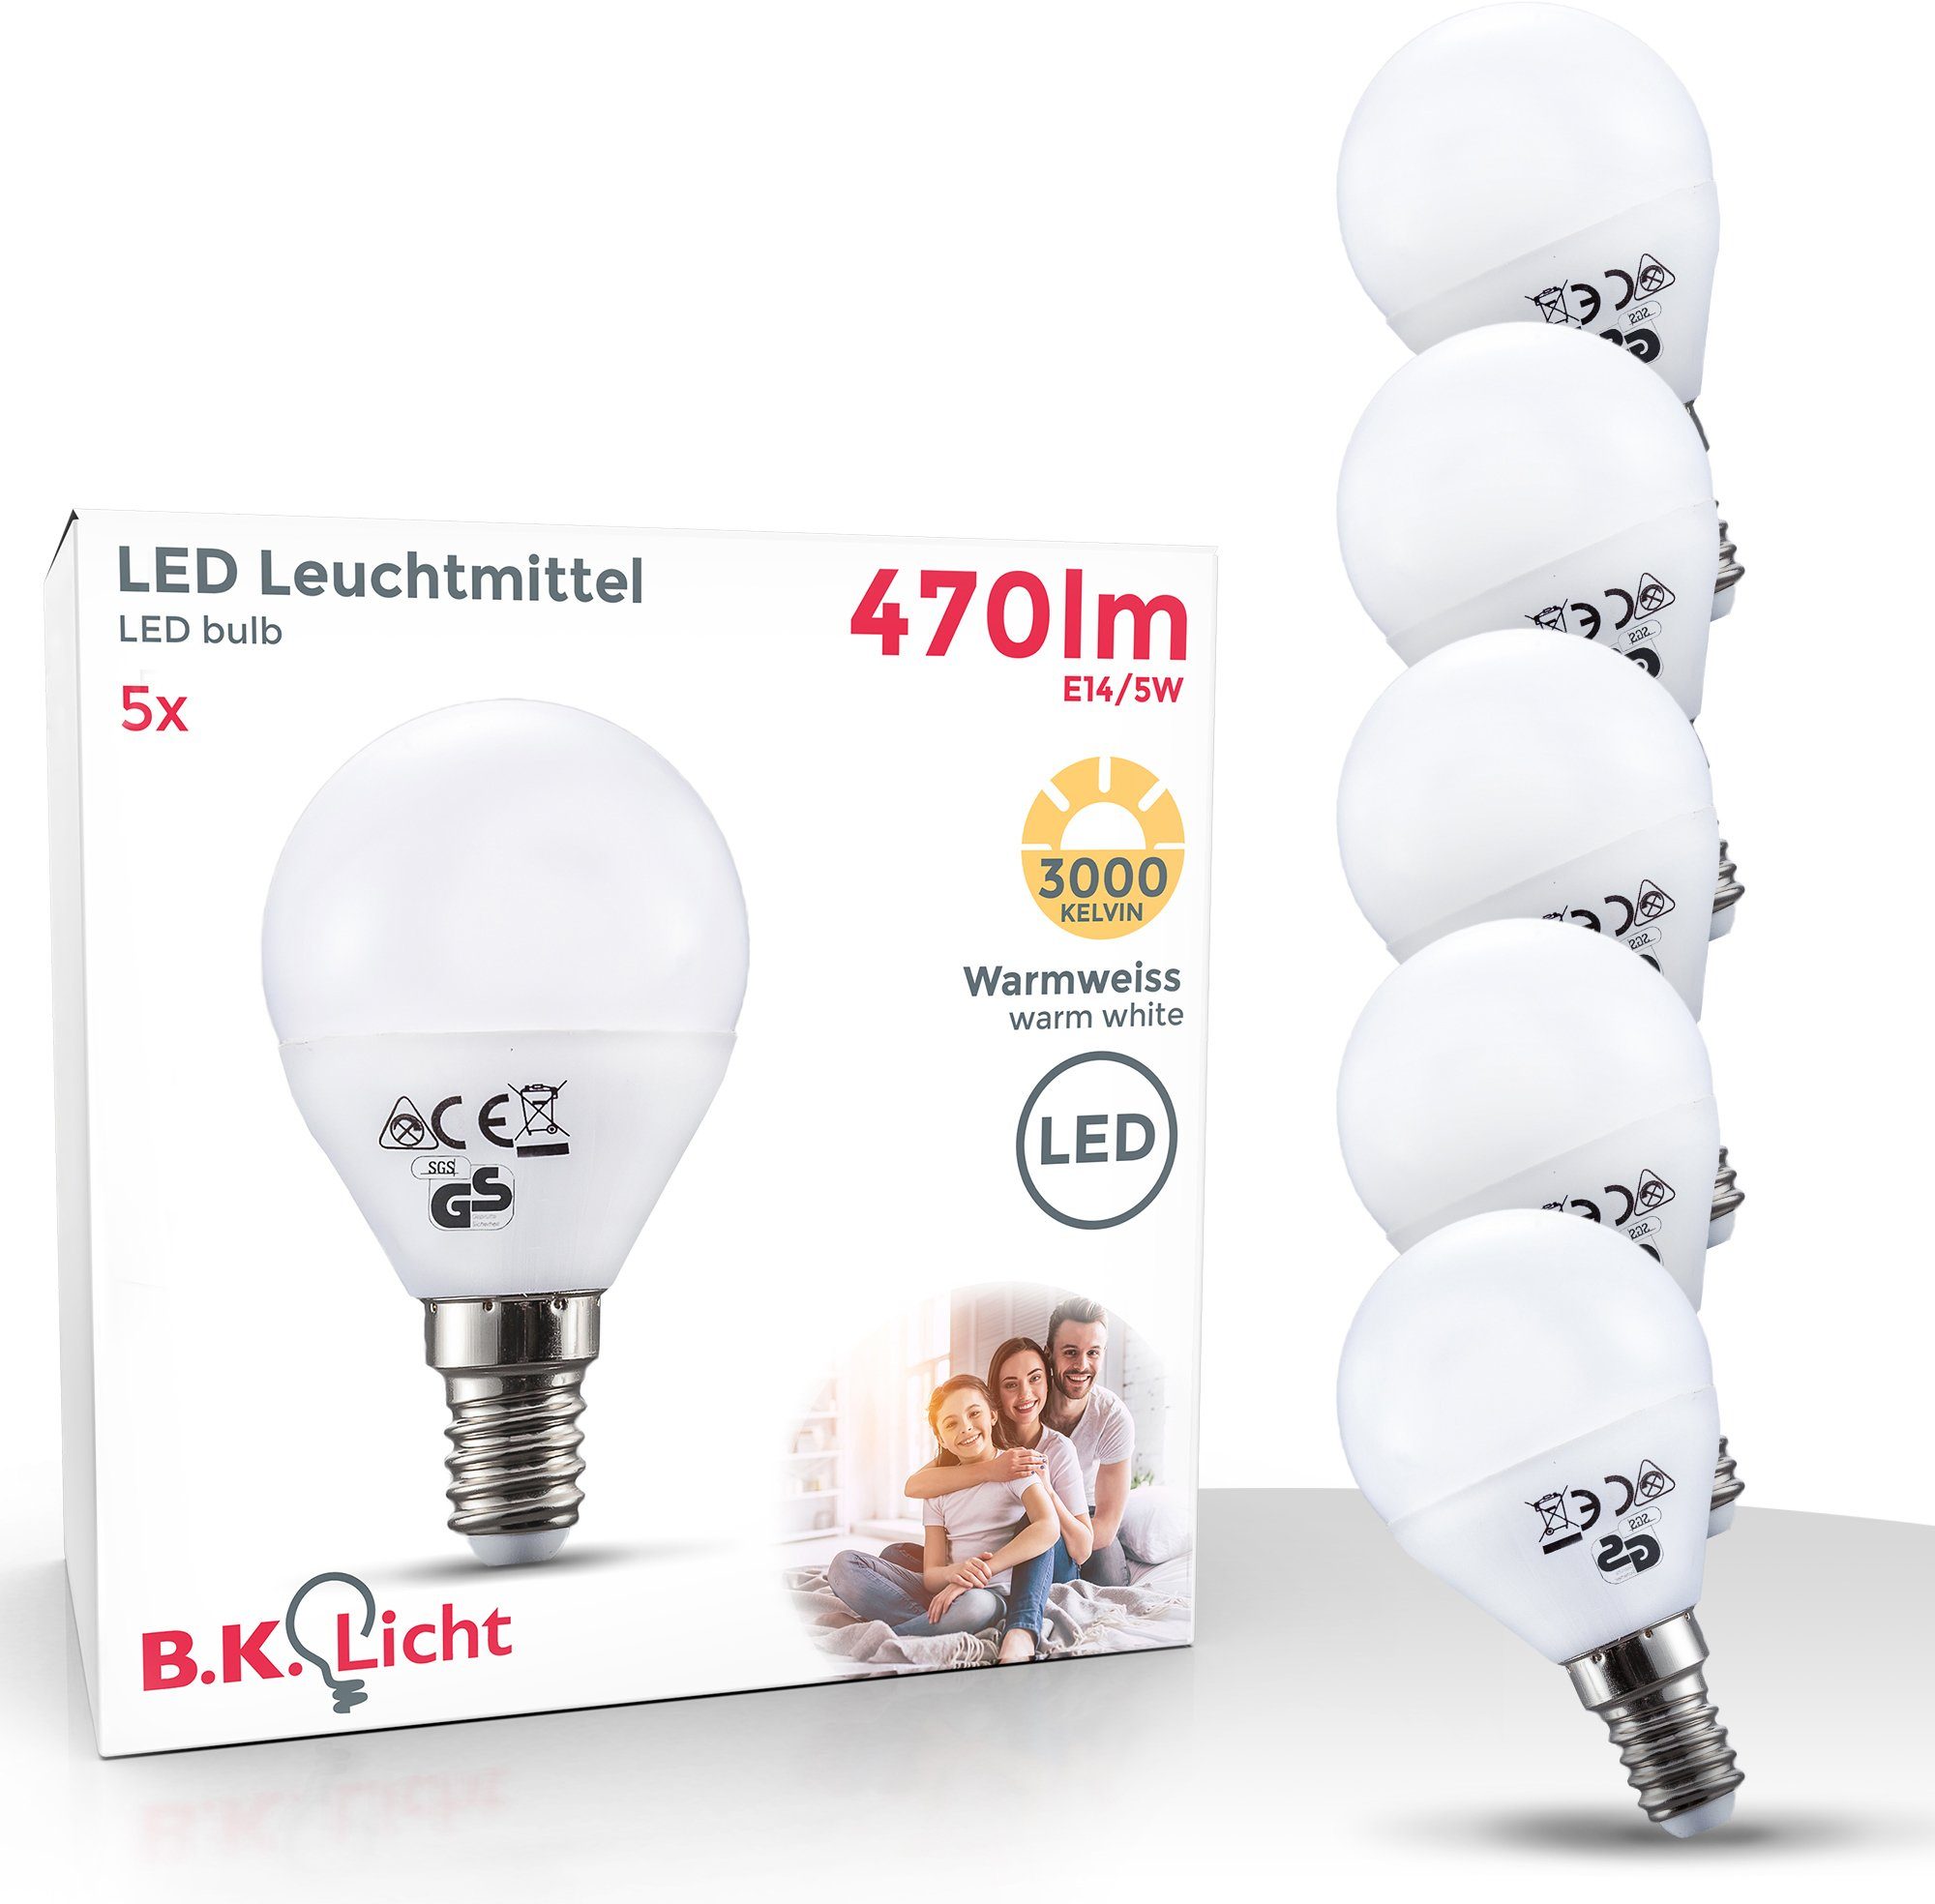 3.000 LED-Lampe E14, sind 5 St., 5 5 mit ersetzen Watt Halogen Watt B.K.Licht Warmweiß, ernergiesparend und Energiesparlampe, LED-Leuchtmittel, Lampen 470 Lumen Glühbirne Kelvin